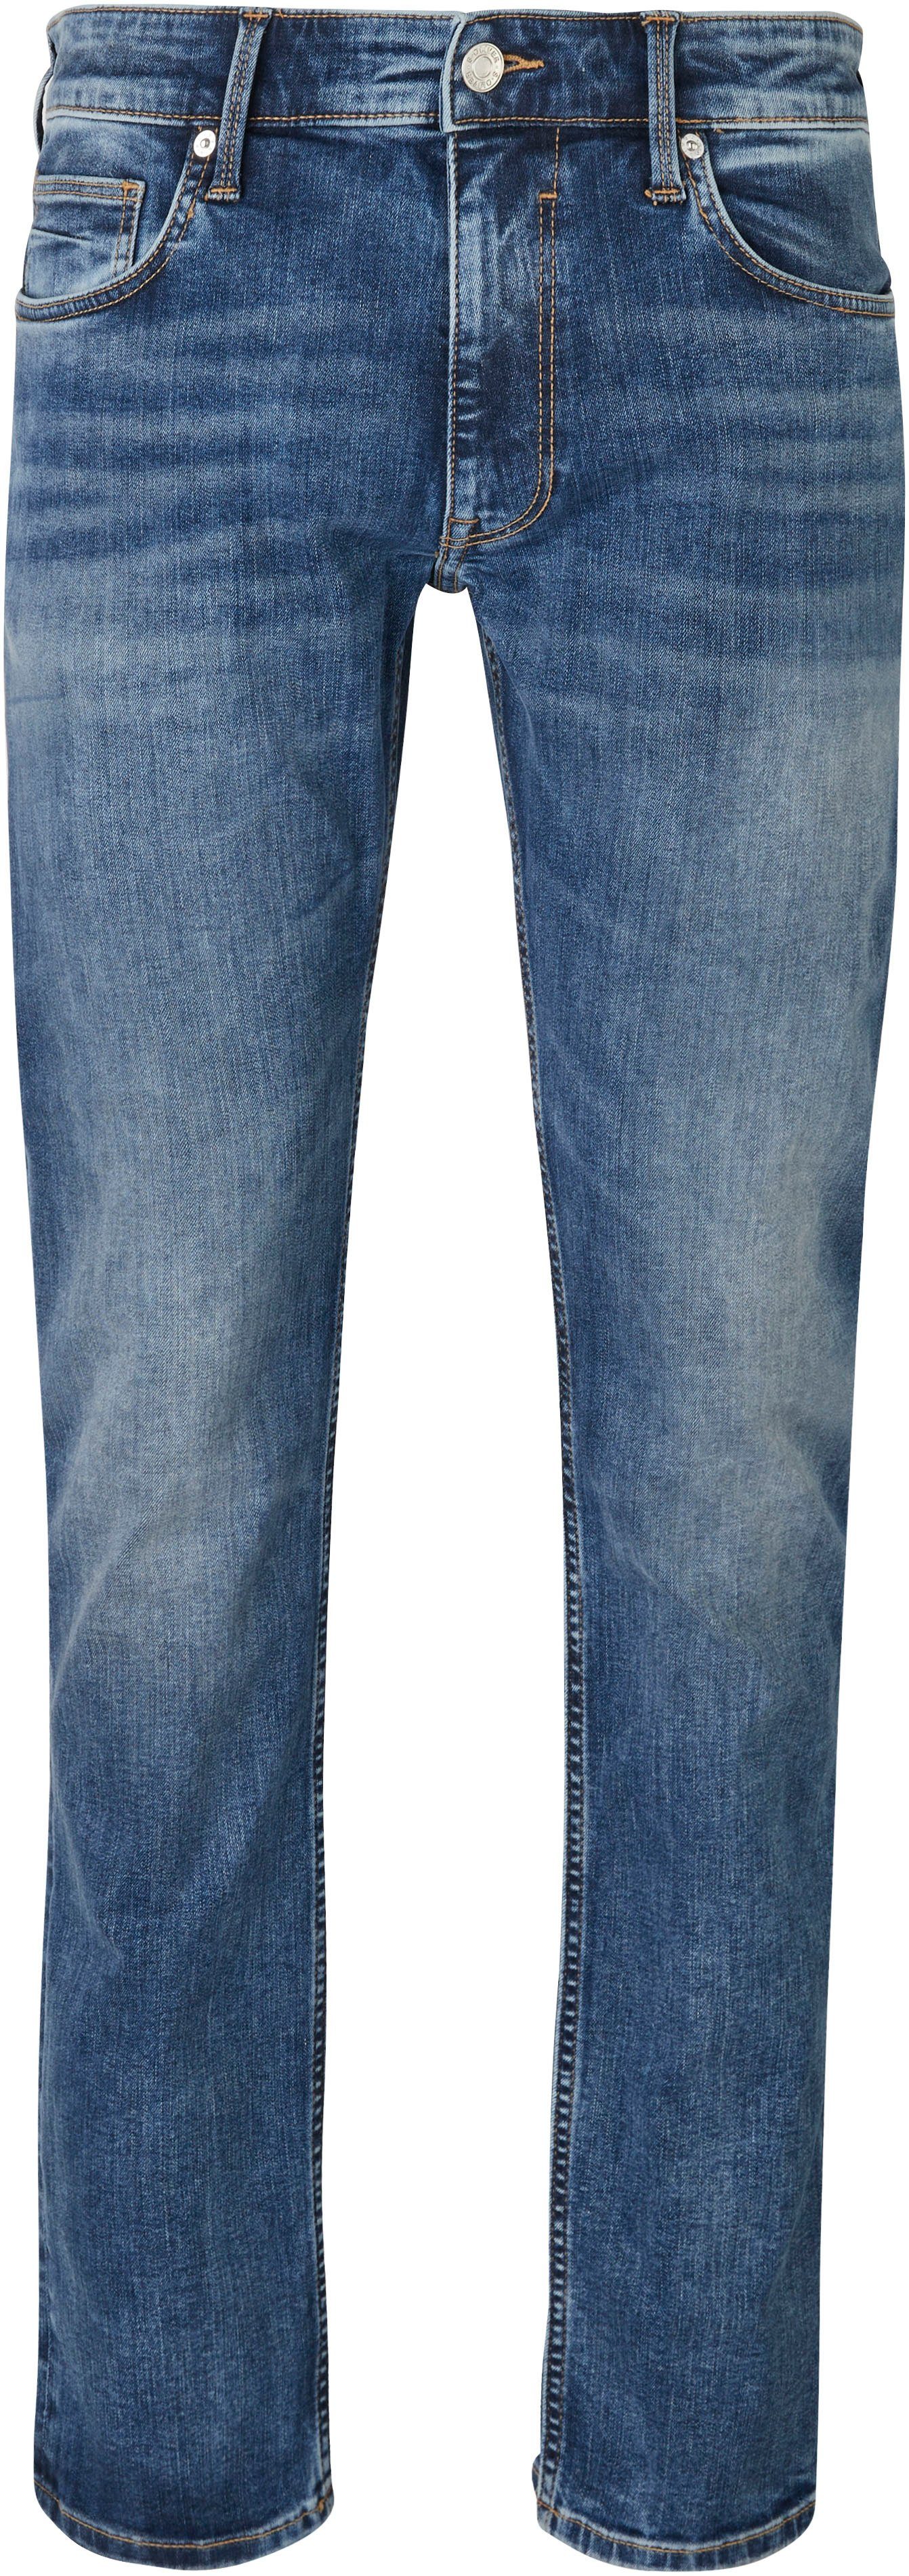 s.Oliver Bequeme Jeans mit Gesäß- und Eingrifftaschen mid blue 32